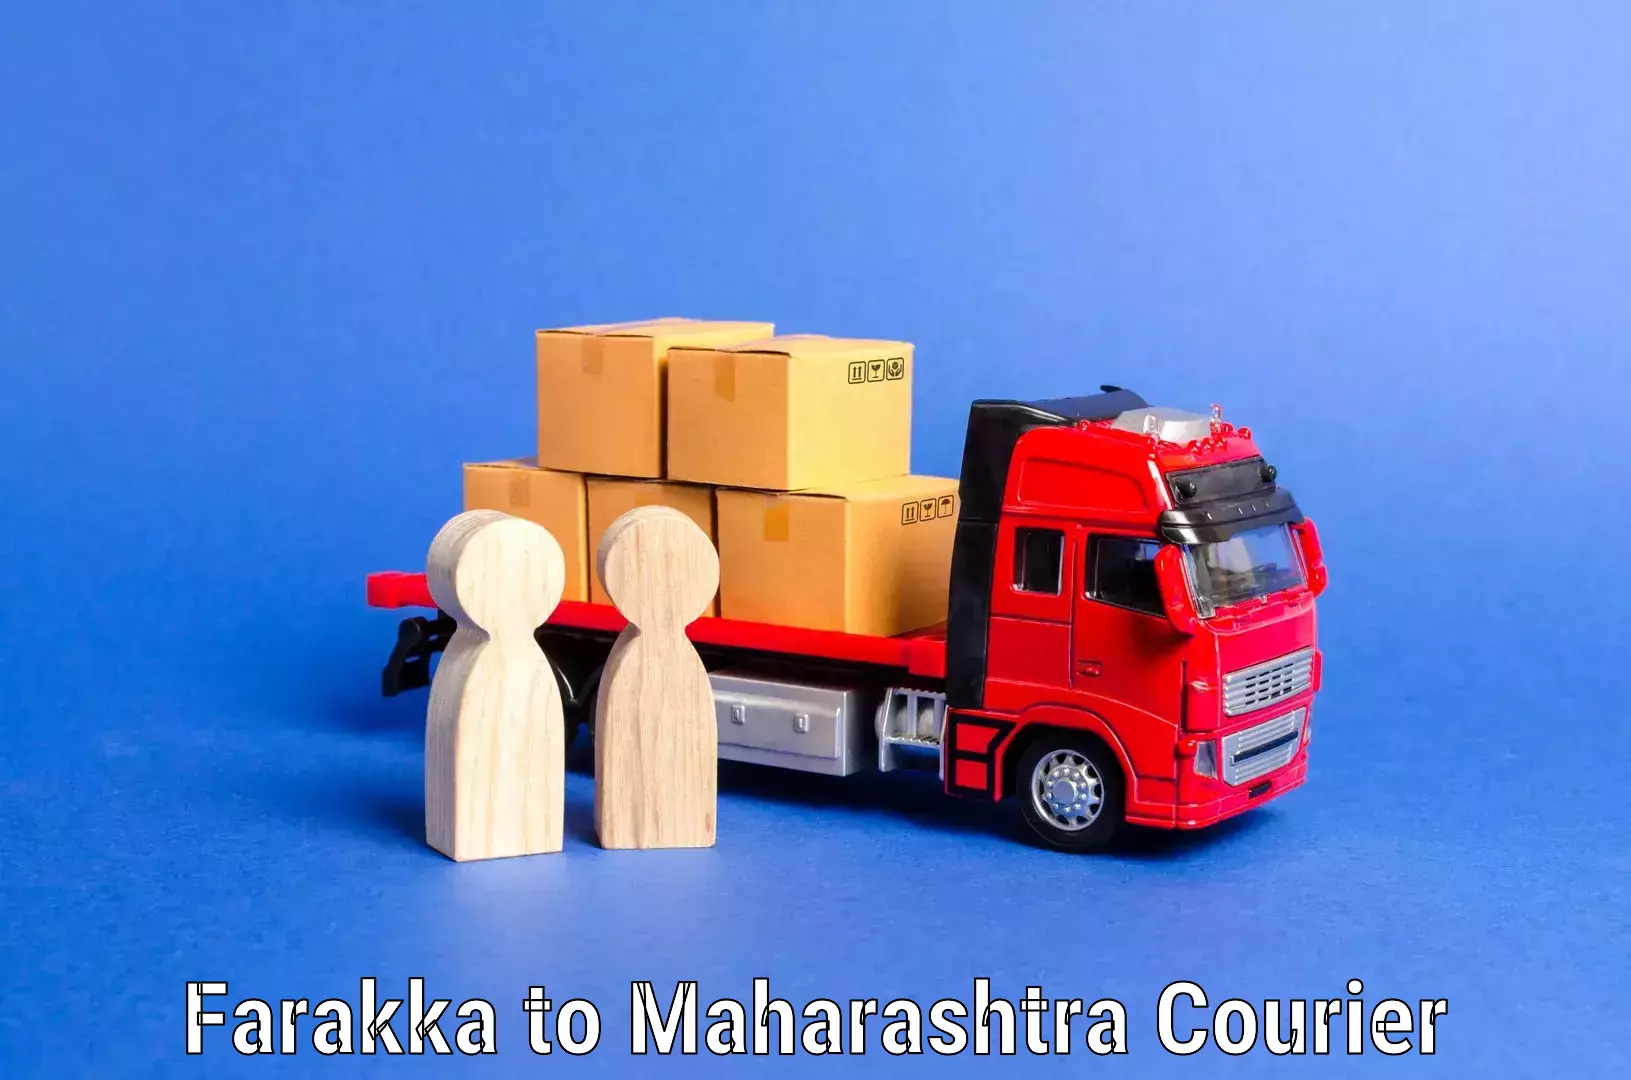 Efficient relocation services Farakka to Maharashtra